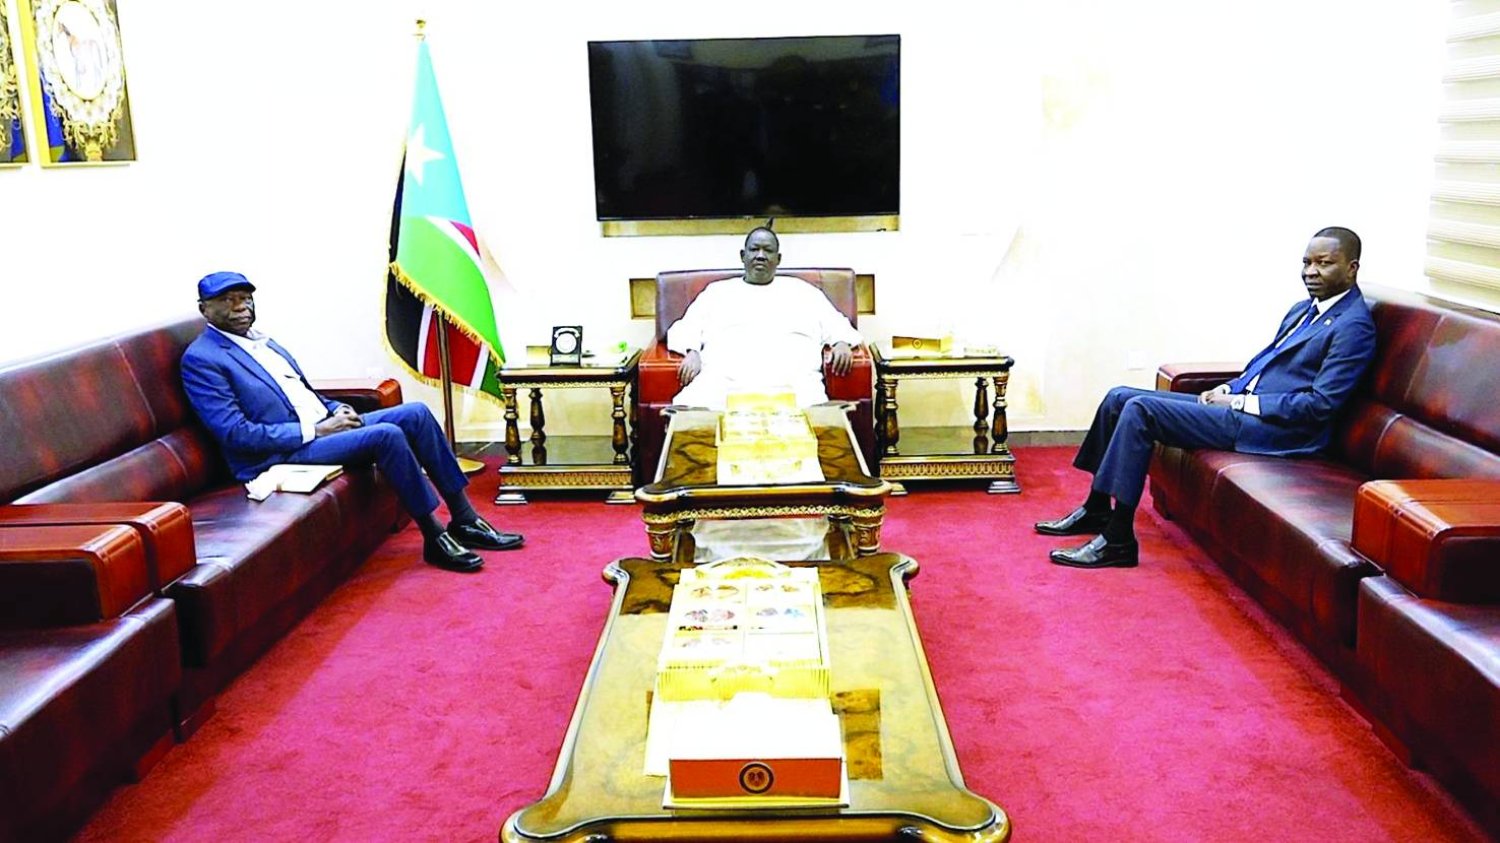 
كباشي (يمين) والحلو (يسار) في جوبا بحضور توت قلواك مستشار الرئيس سلفا كير (وكالة الأنباء السودانية)